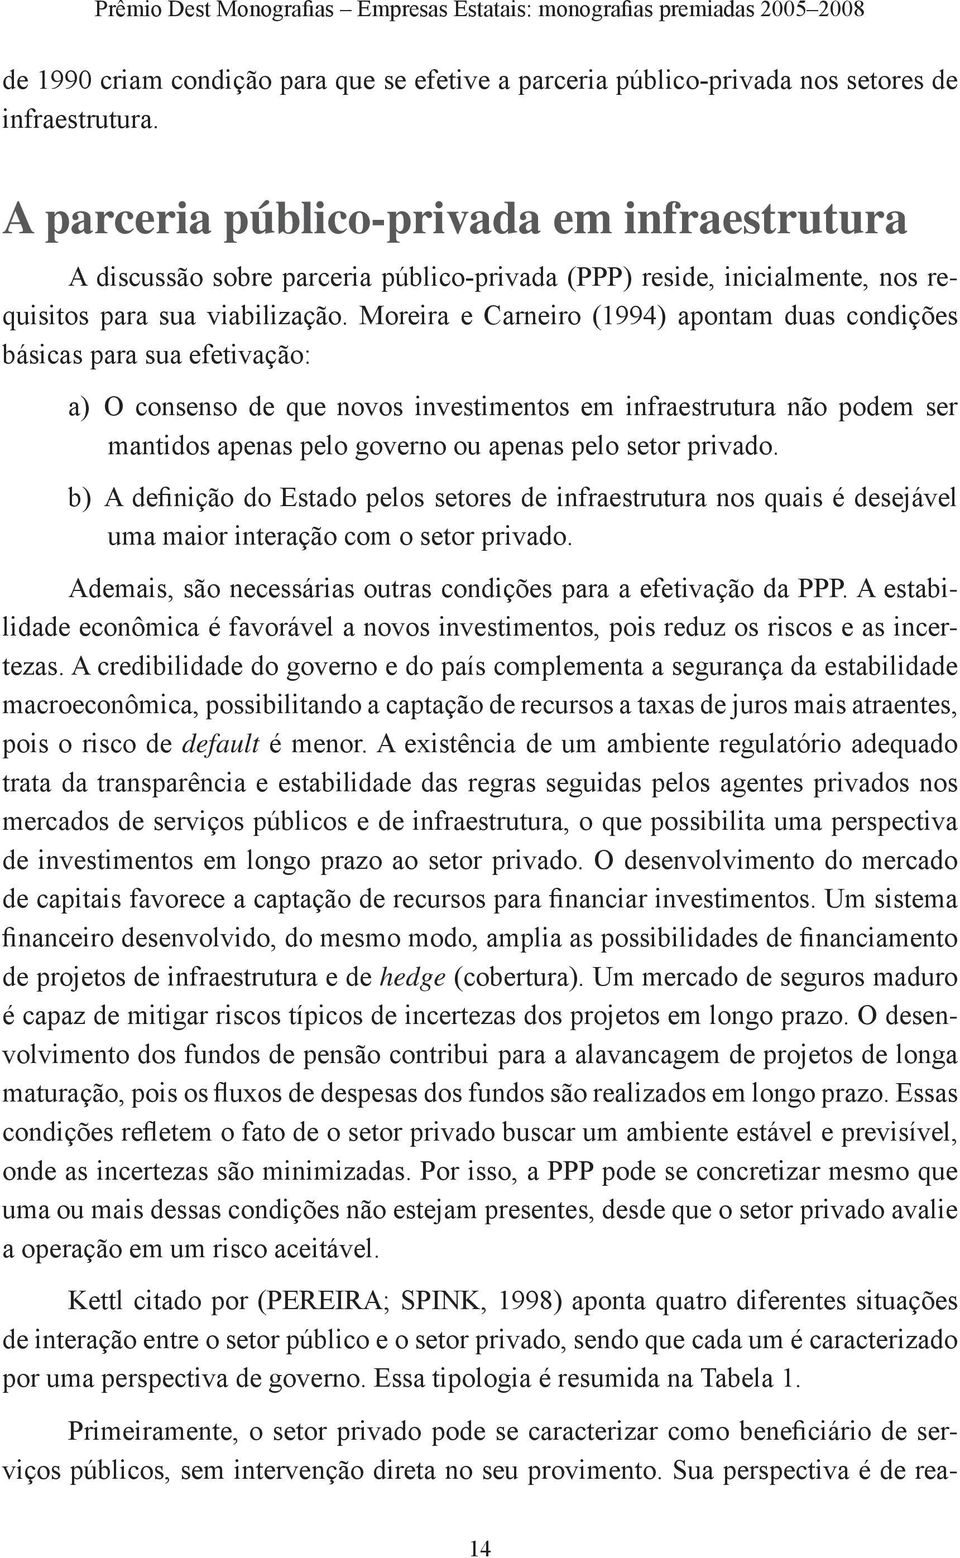 Moreira e Carneiro (1994) apontam duas condições básicas para sua efetivação: a) O consenso de que novos investimentos em infraestrutura não podem ser mantidos apenas pelo governo ou apenas pelo